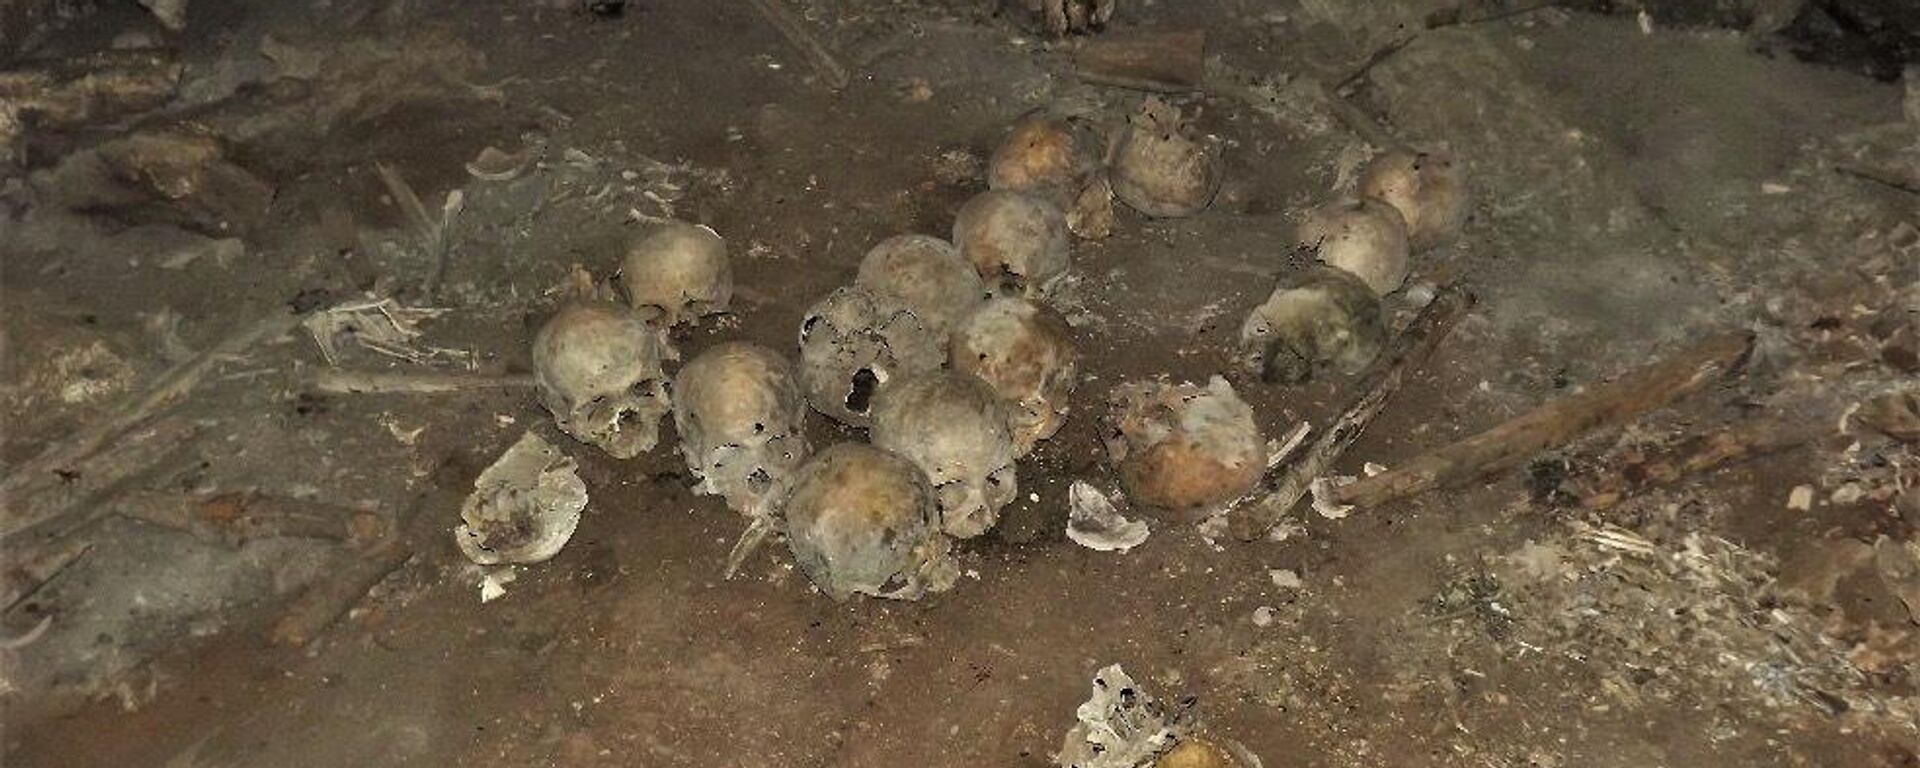 Restos humanos hallados en la zona fronteriza entre México y Guatemala, en el estado de Chiapas - Sputnik Mundo, 1920, 06.05.2022